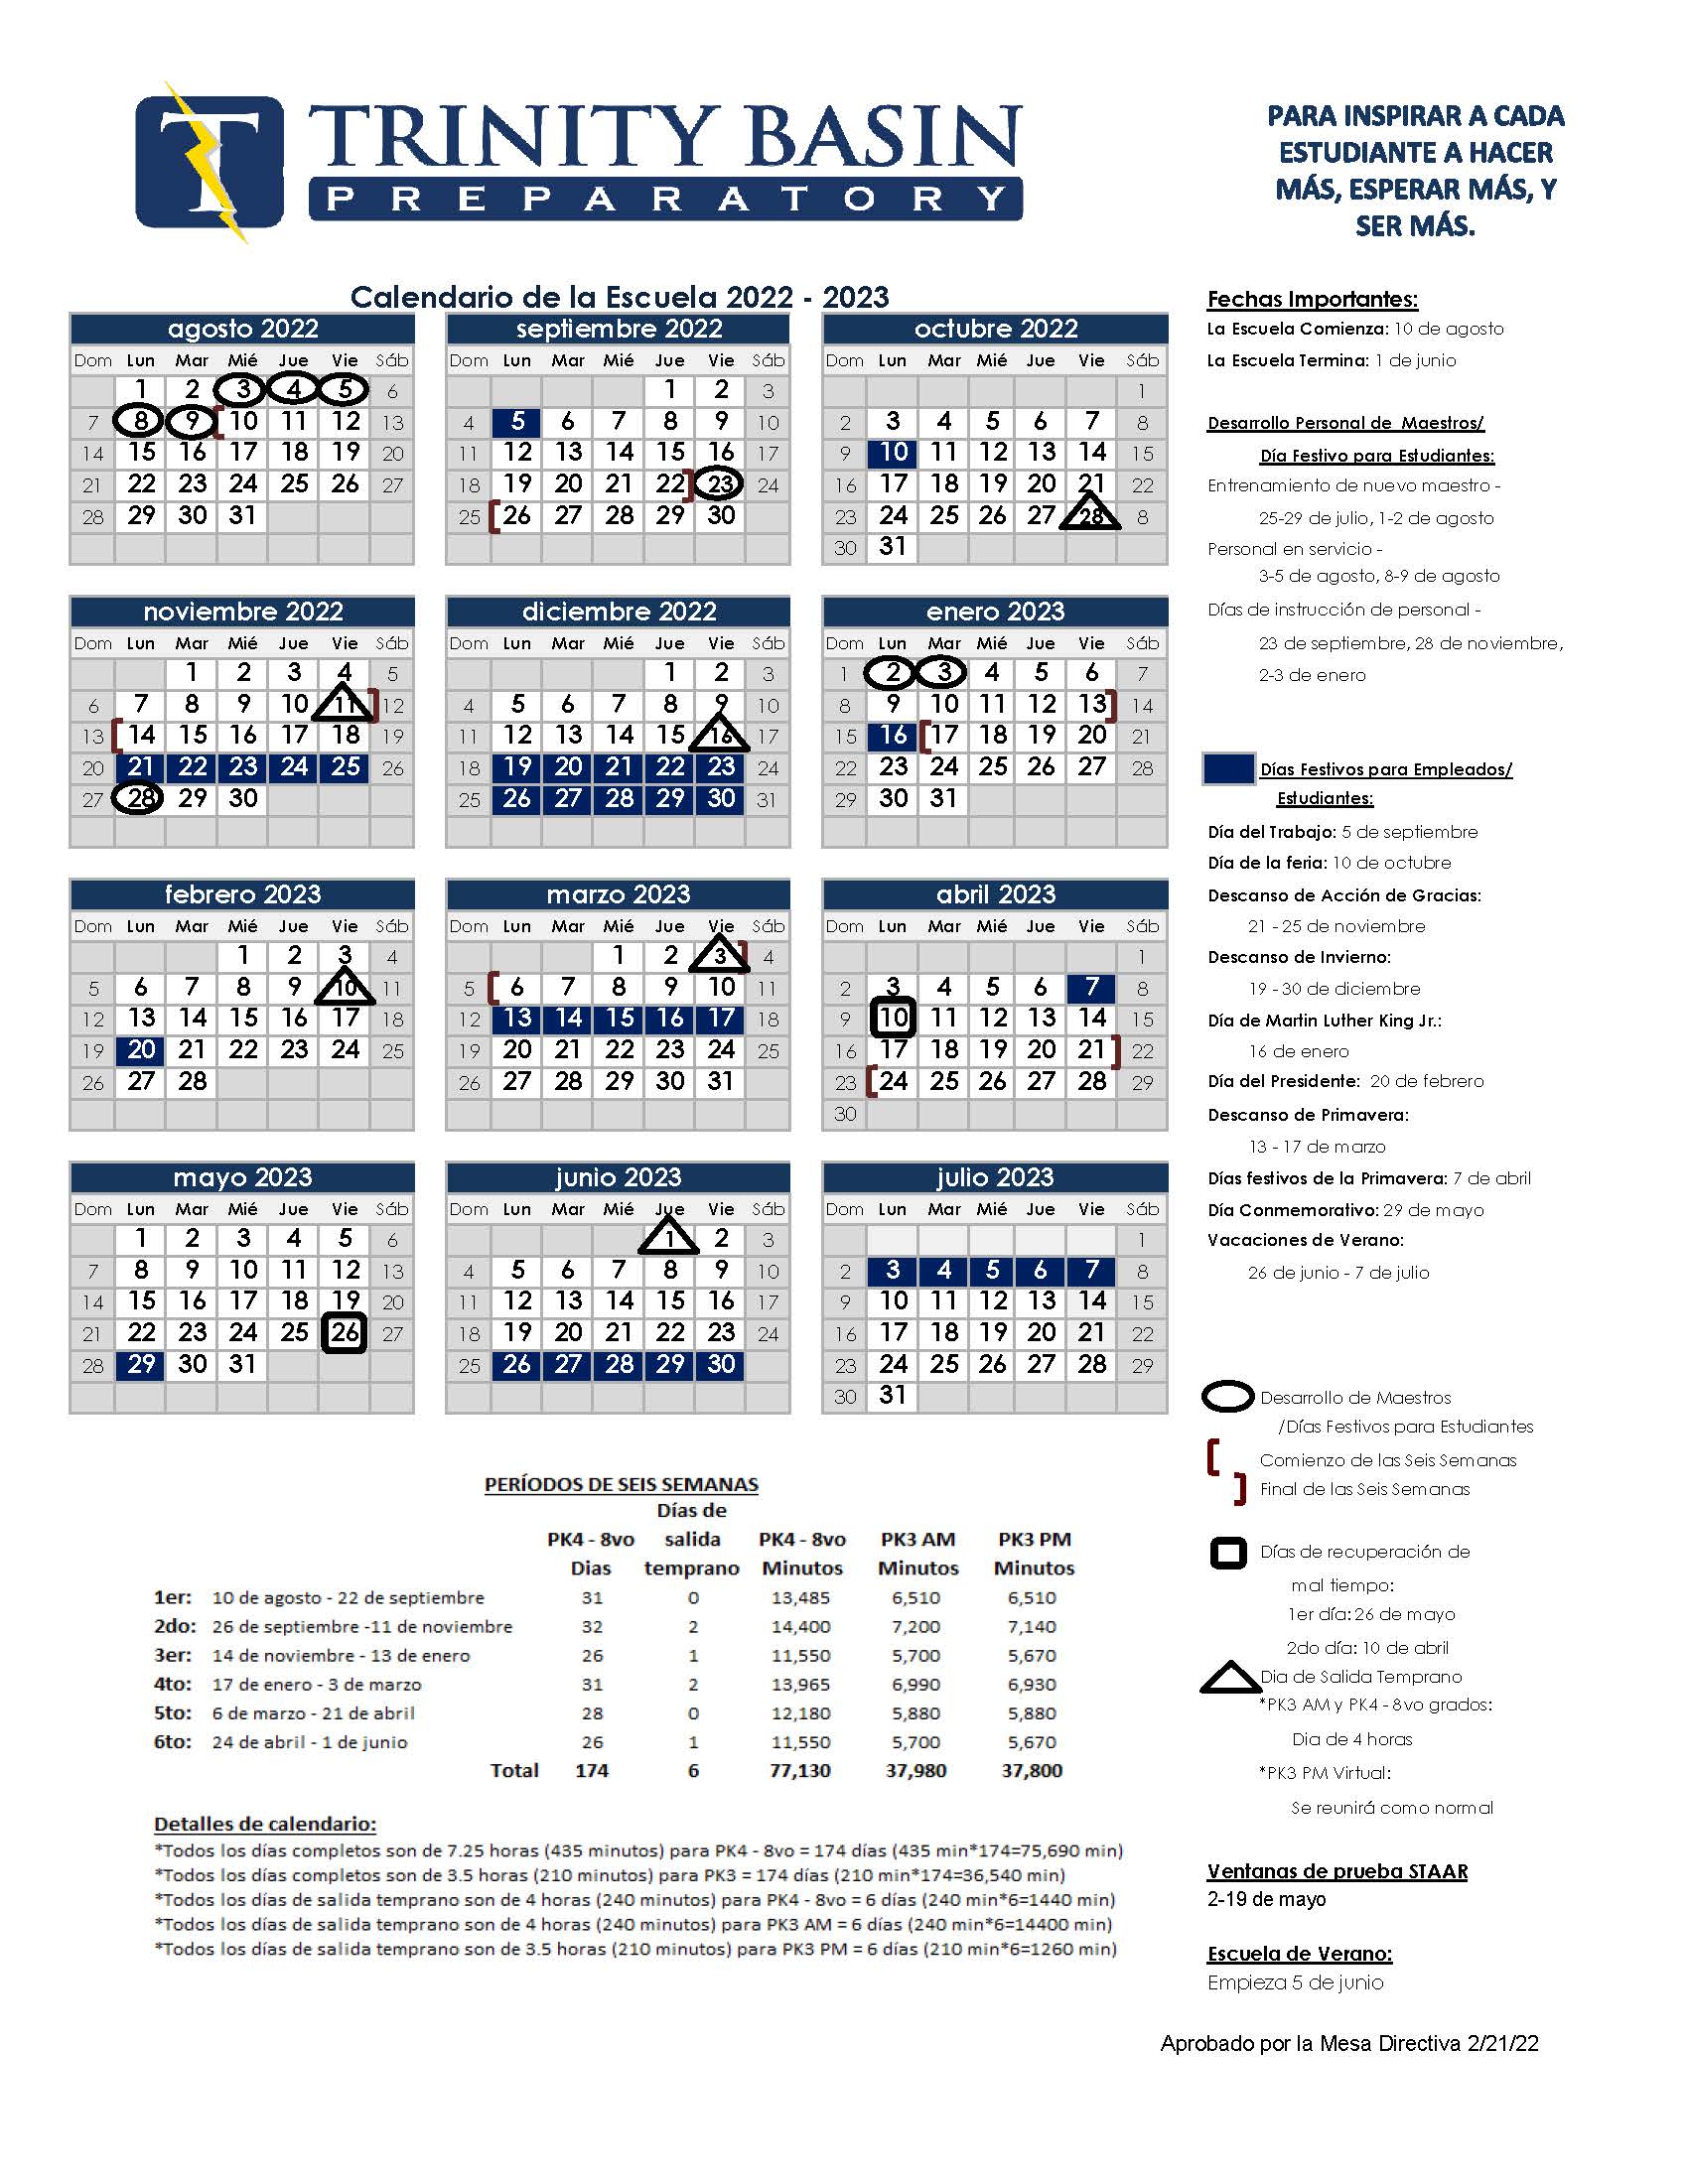 Academic Calendar - Spanish